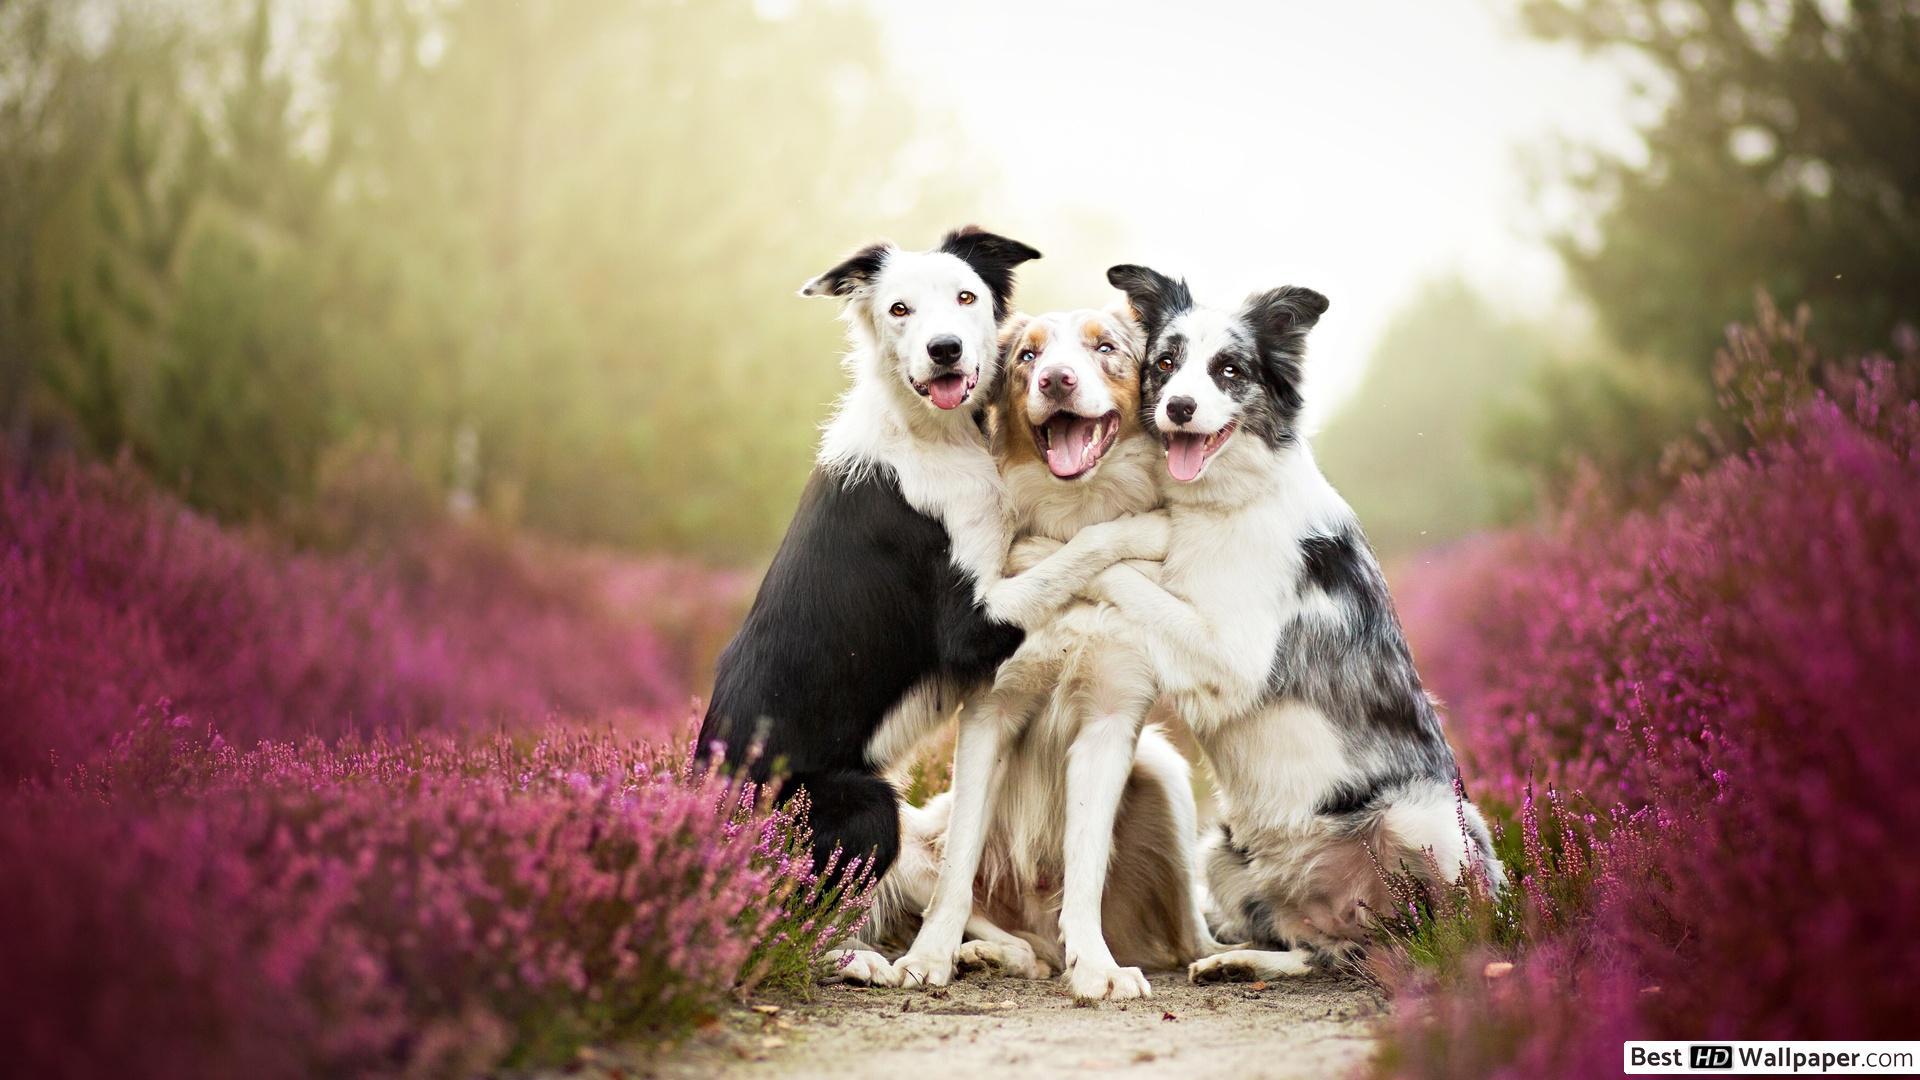 Group dog hug in purple flower field HD wallpaper download